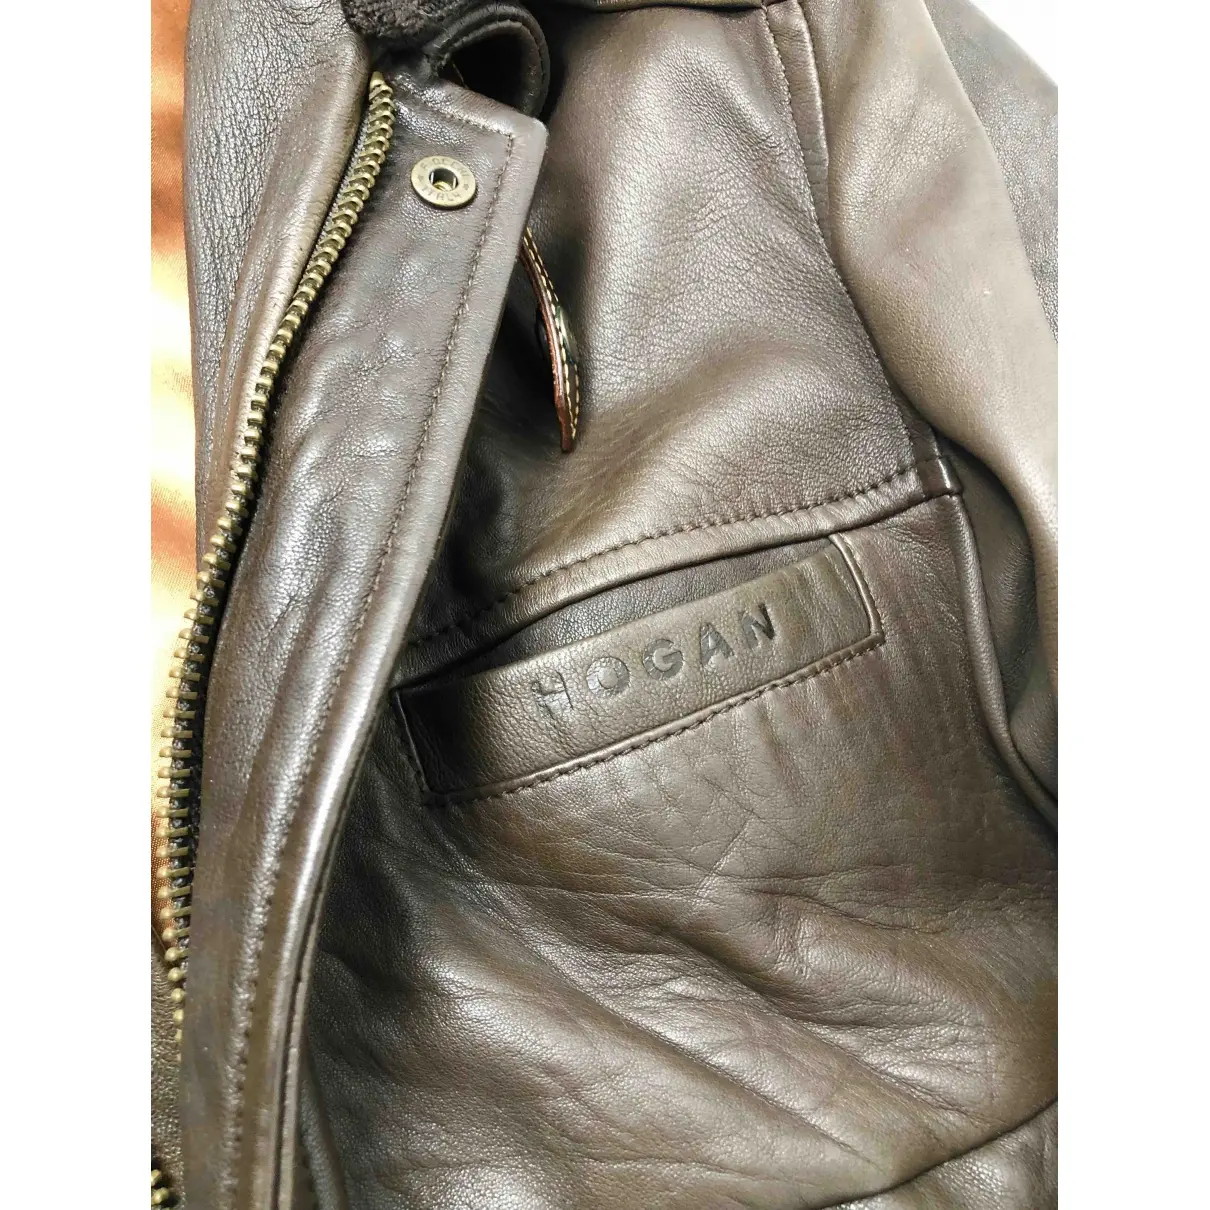 Hogan Leather jacket for sale - Vintage